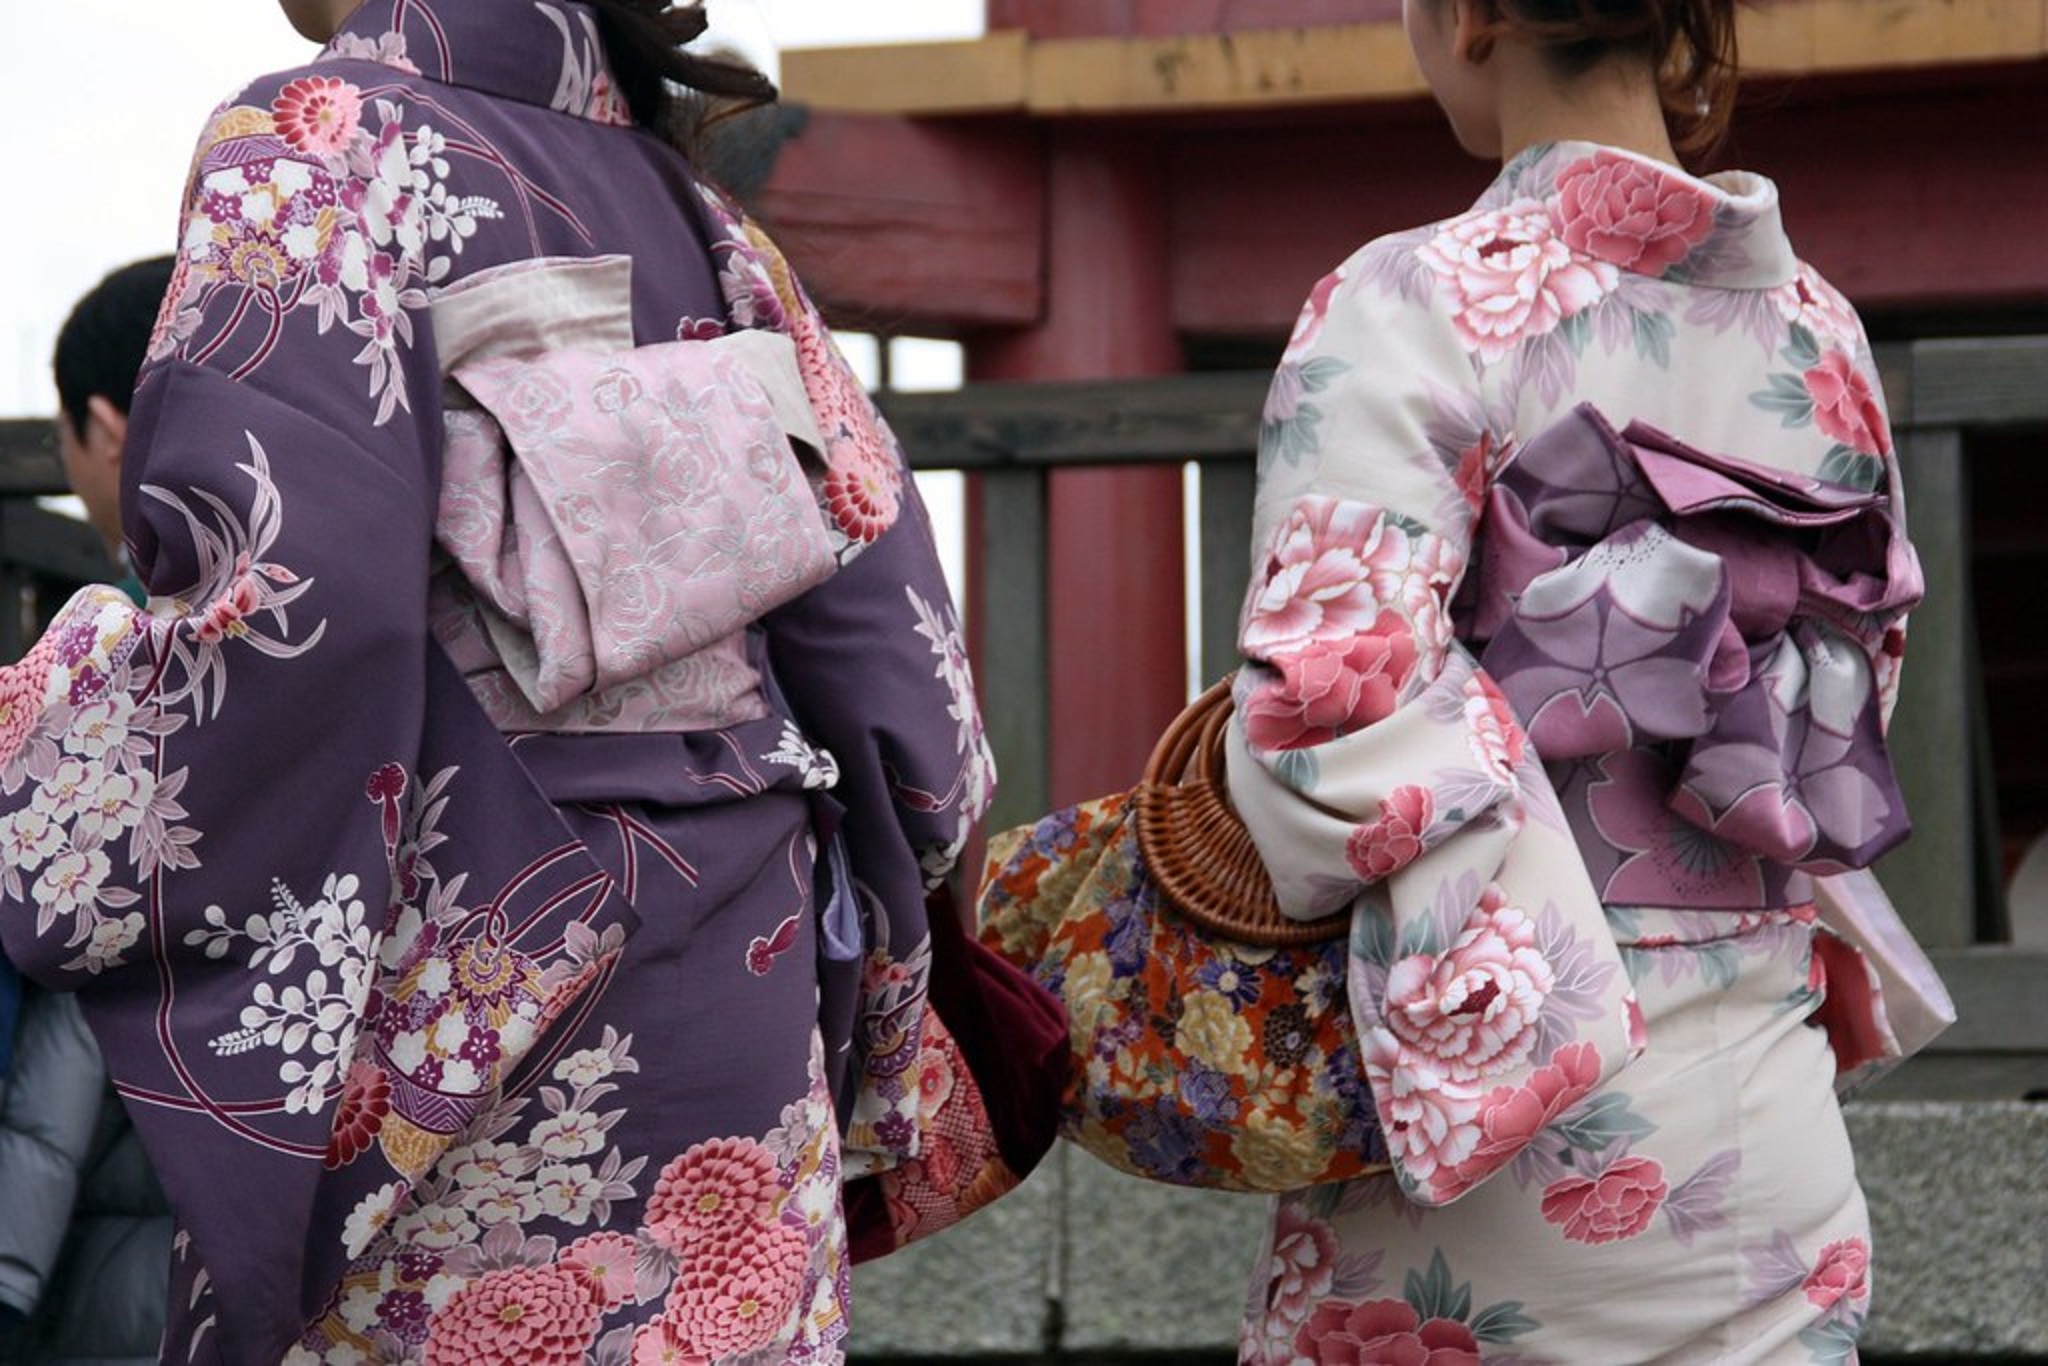 Un étudiant français expulsé de la classe pour avoir porté un kimono » Kresy